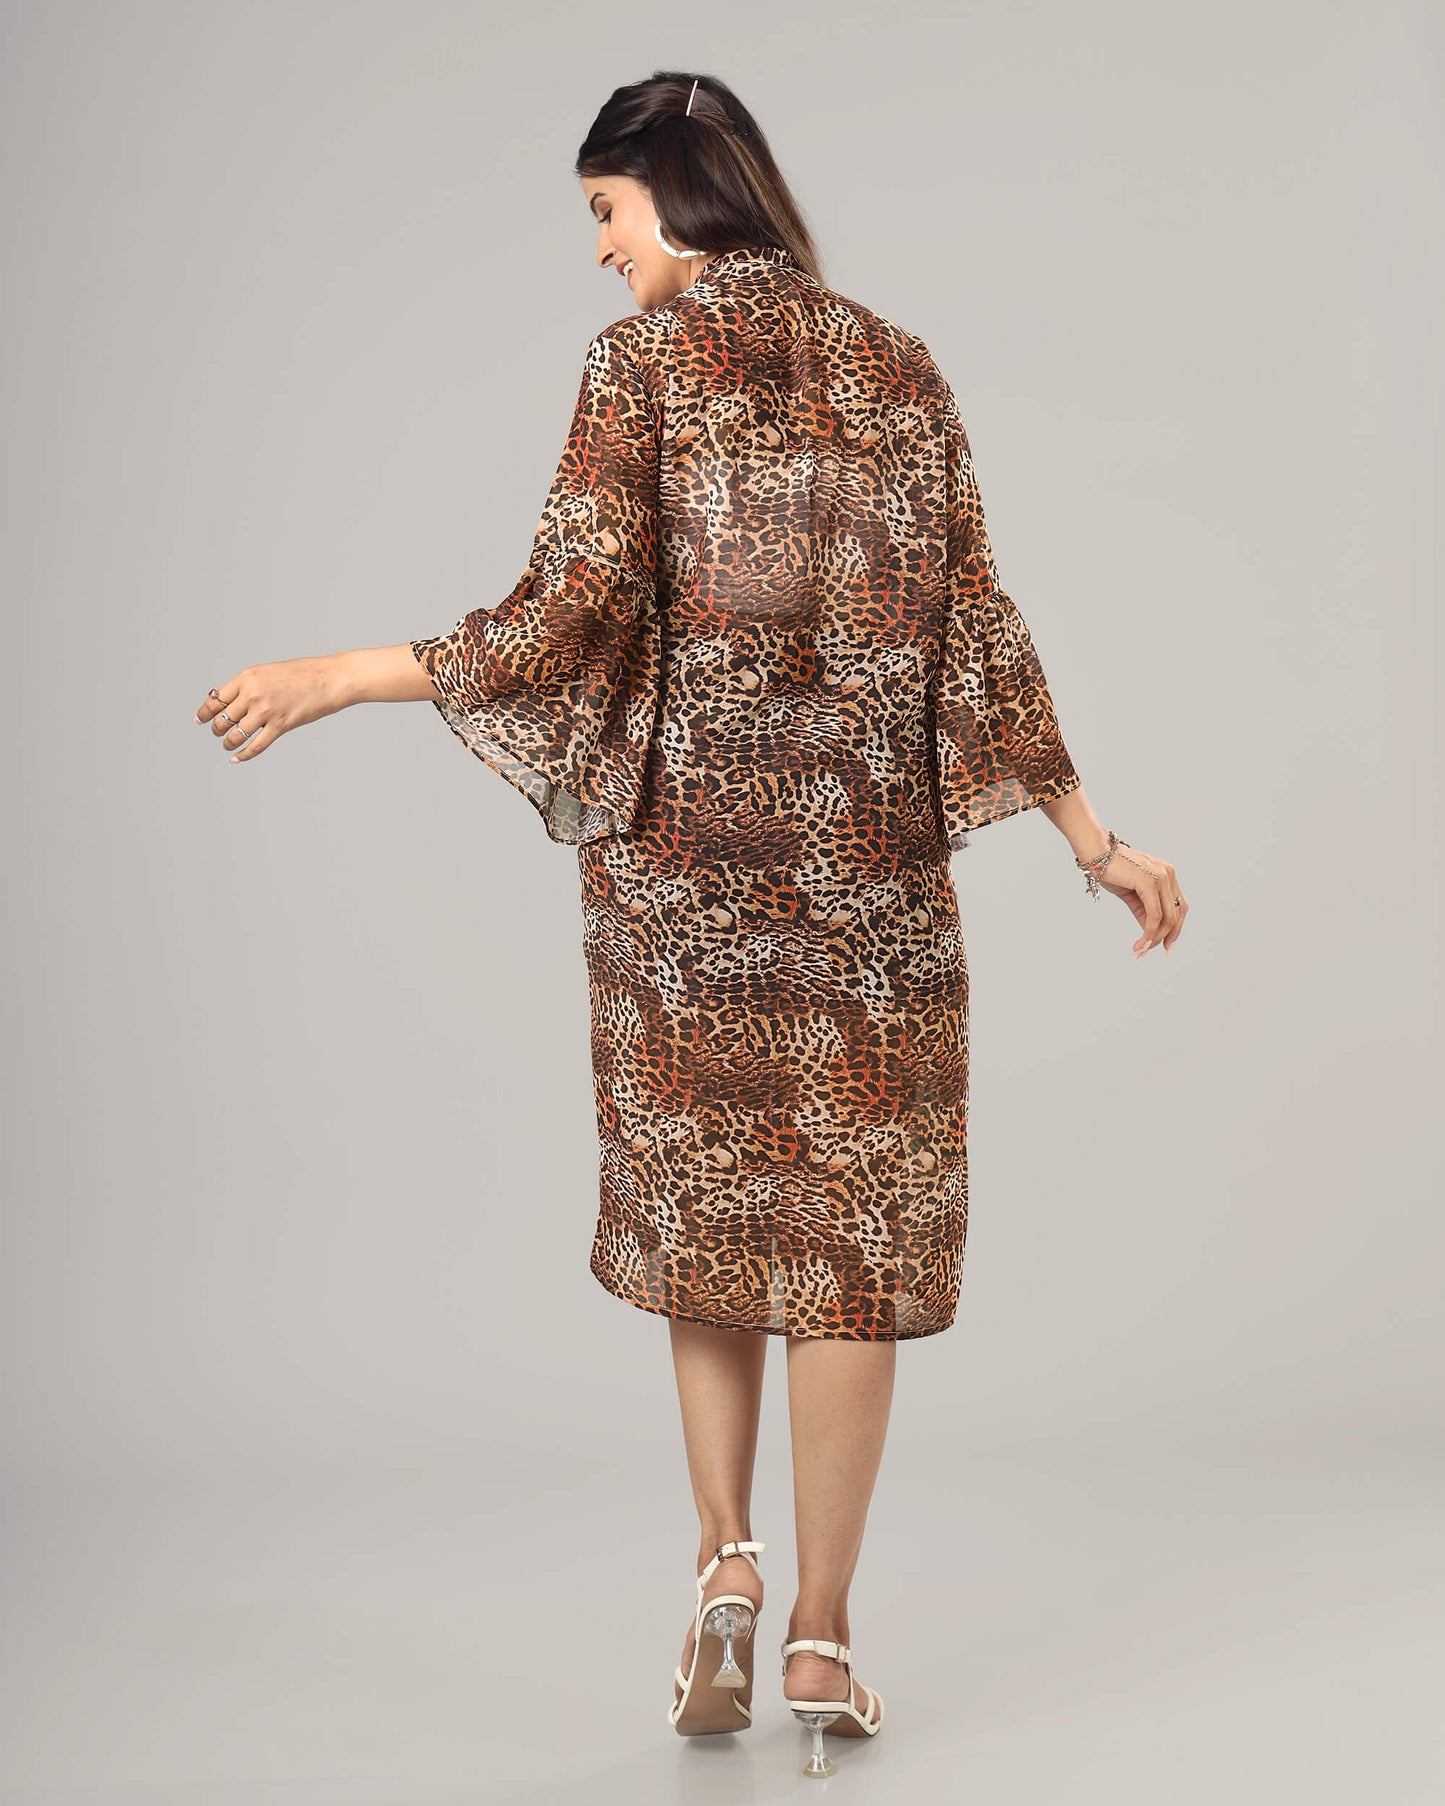 Leopard Print Kimono Shrug For Women